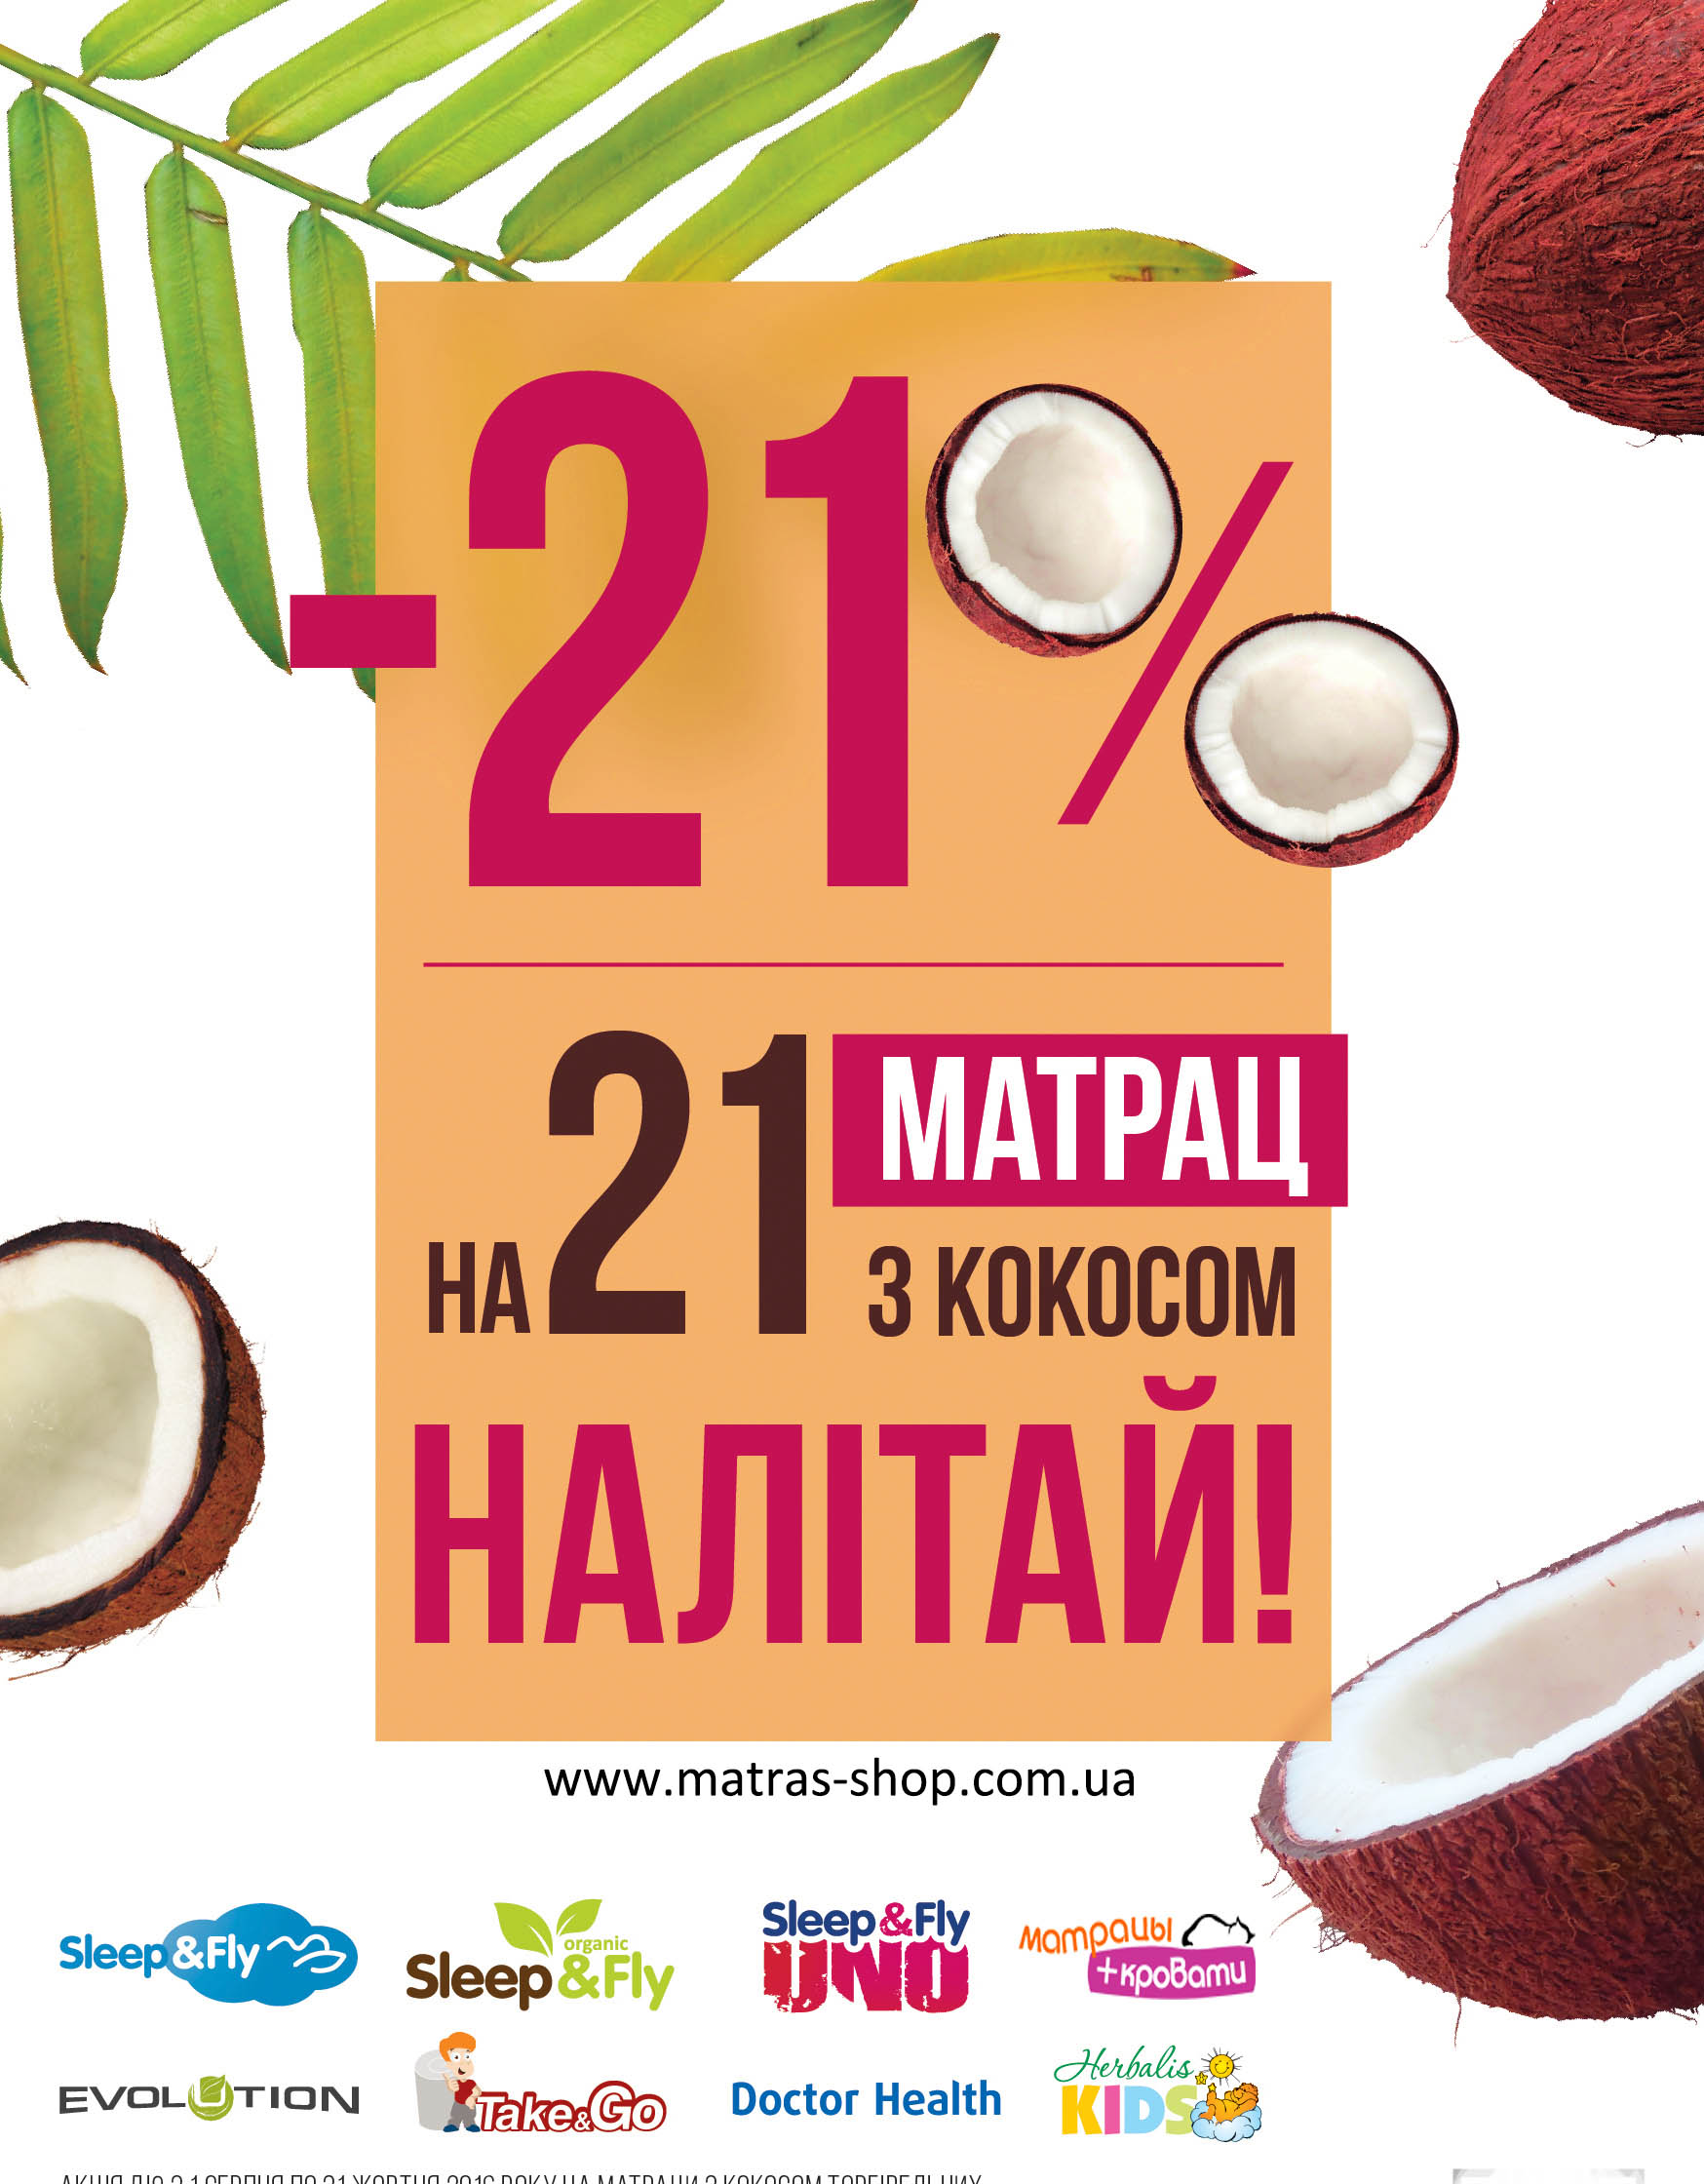 скидка на матрас с кокосом 21%